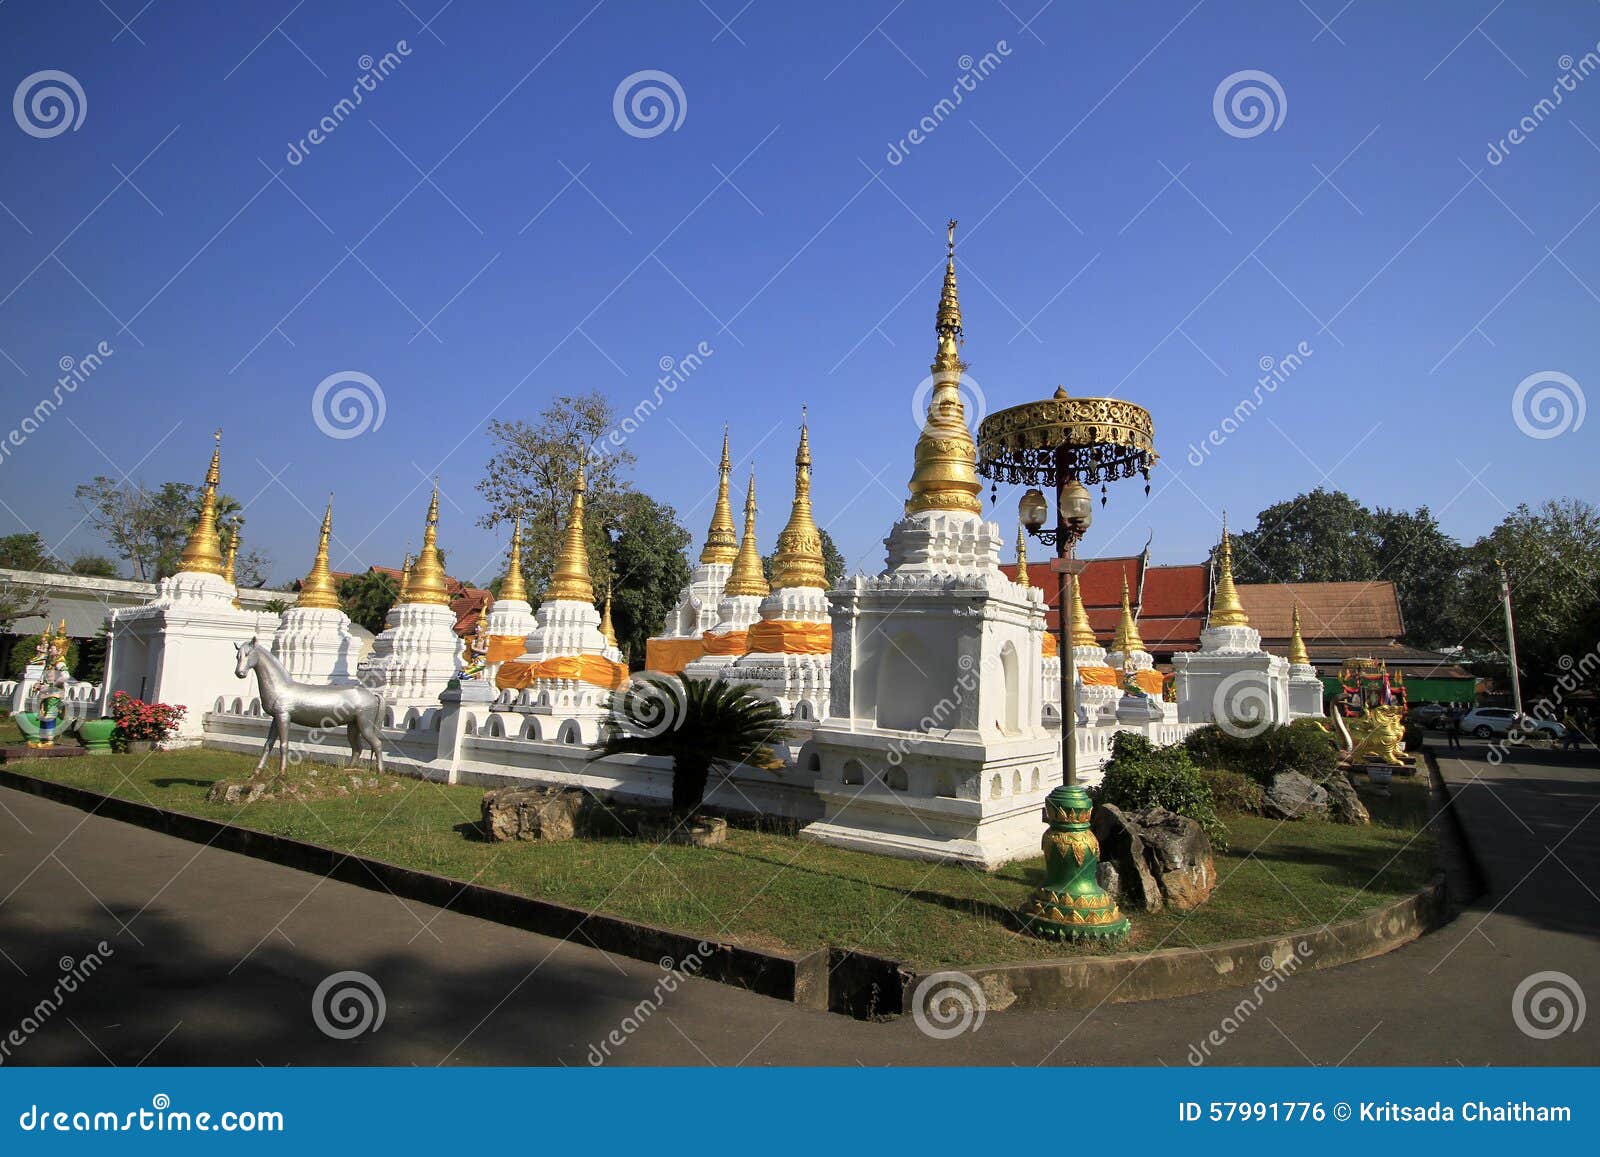 many pagodas with beep blue sky at wat-chedi-sao-lang, lampang